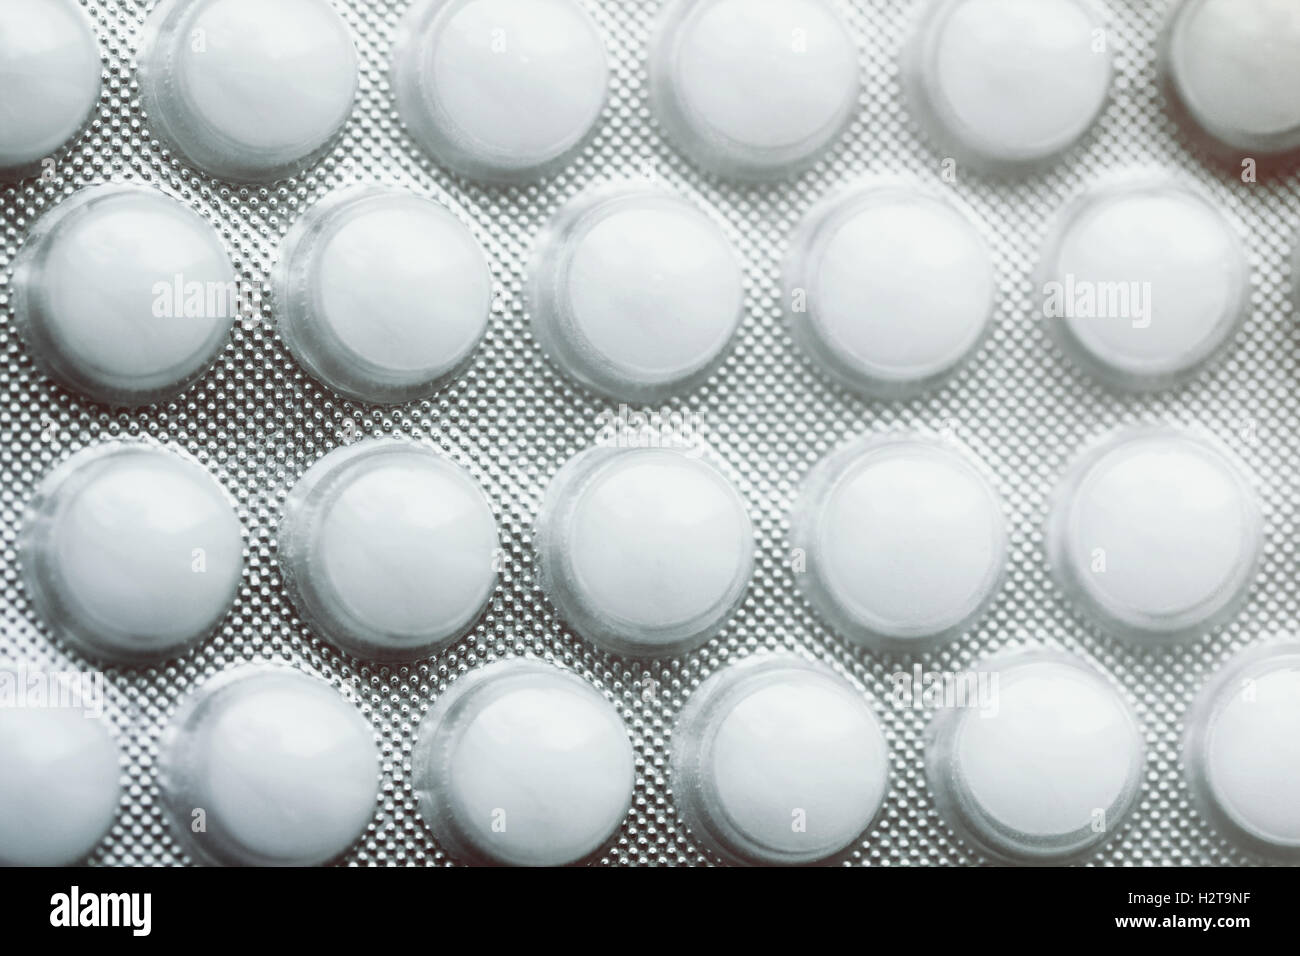 White round pills close up macro photo Stock Photo